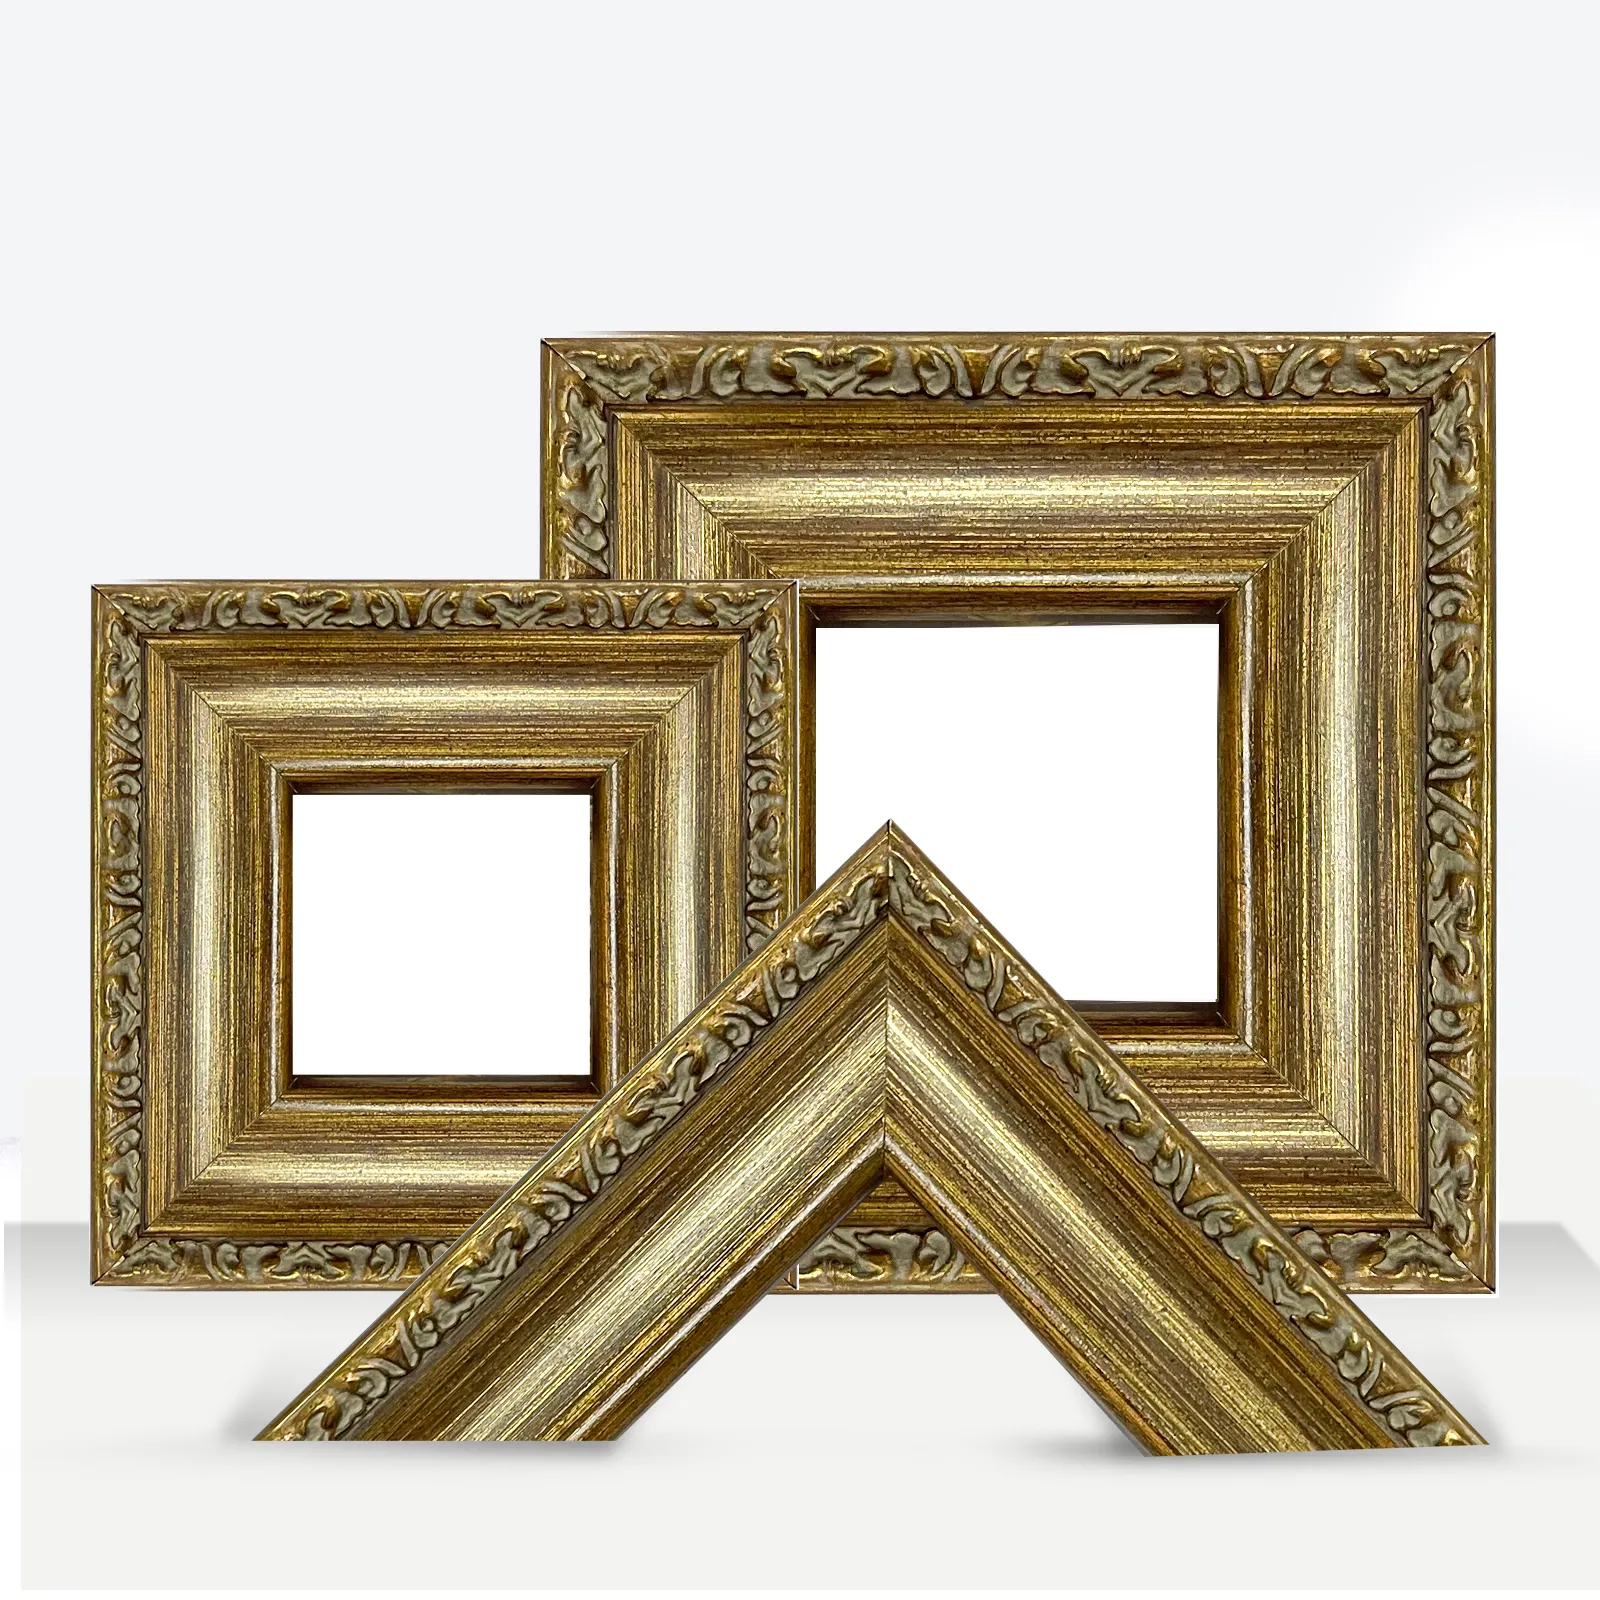 Factory Outlet Retro Advanced Gold Adornado Marcos de fotos de madera Tamaño personalizado Art Picture Frame Molding para TV Mirror Home Decor